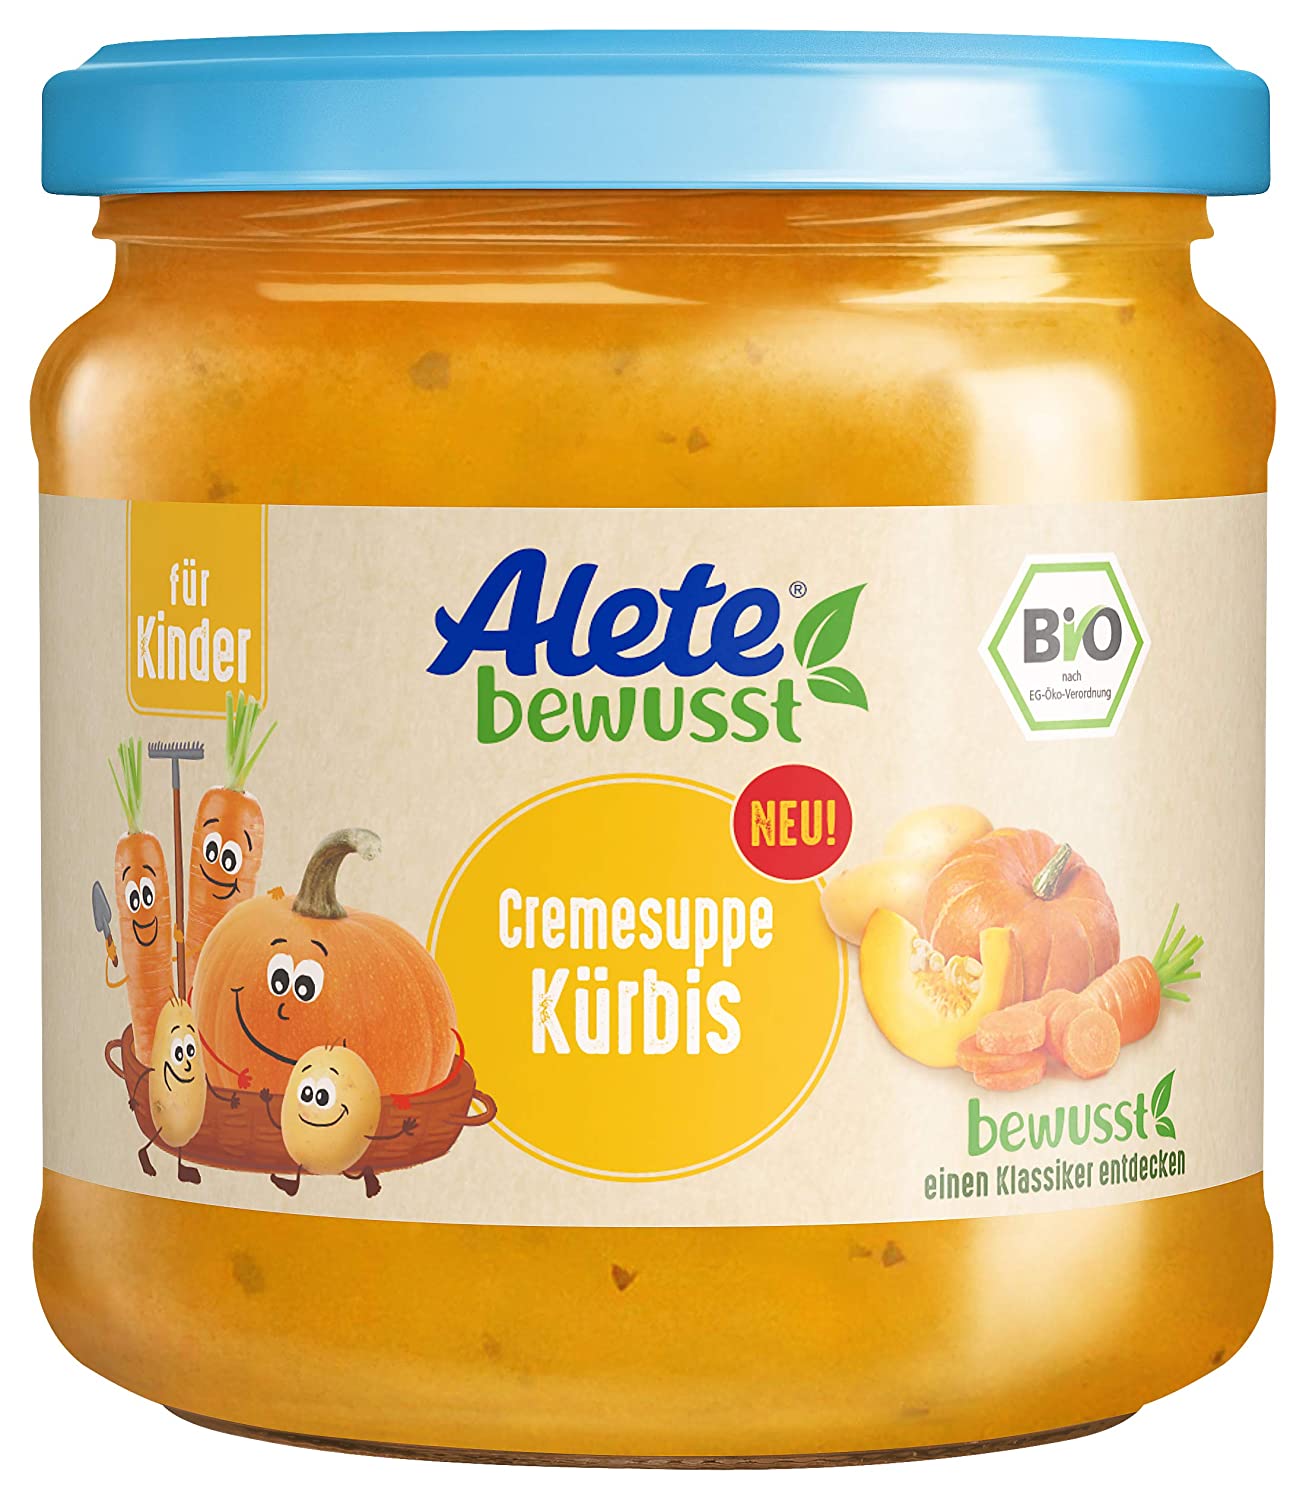 Alete bewusst Cremesuppe Kürbis, ab 3 Jahren, cremige Kürbissuppe mit Karotten & Kartoffeln, herzhafte Mahlzeit für Kinder zum Mittag- oder Abendessen, ohne Aromastoffe, 350 ml